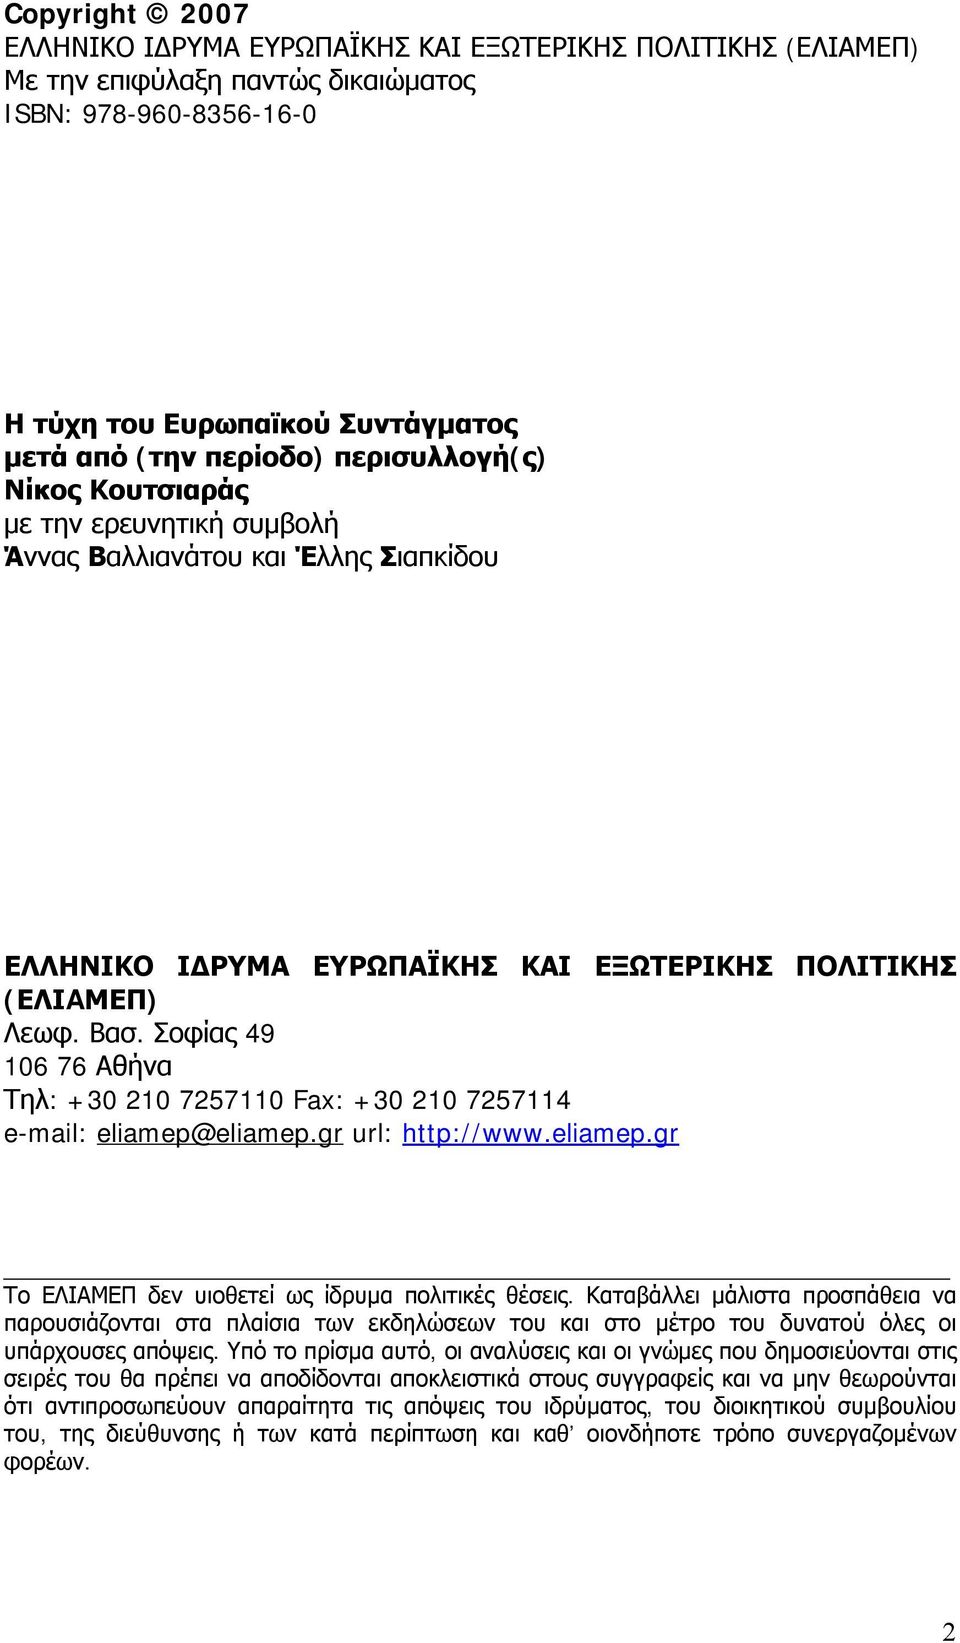 Σοφίας 49 106 76 Αθήνα Τηλ: +30 210 7257110 Fax: +30 210 7257114 e-mail: eliamep@eliamep.gr url: http://www.eliamep.gr Το ΕΛΙΑΜΕΠ δεν υιοθετεί ως ίδρυμα πολιτικές θέσεις.